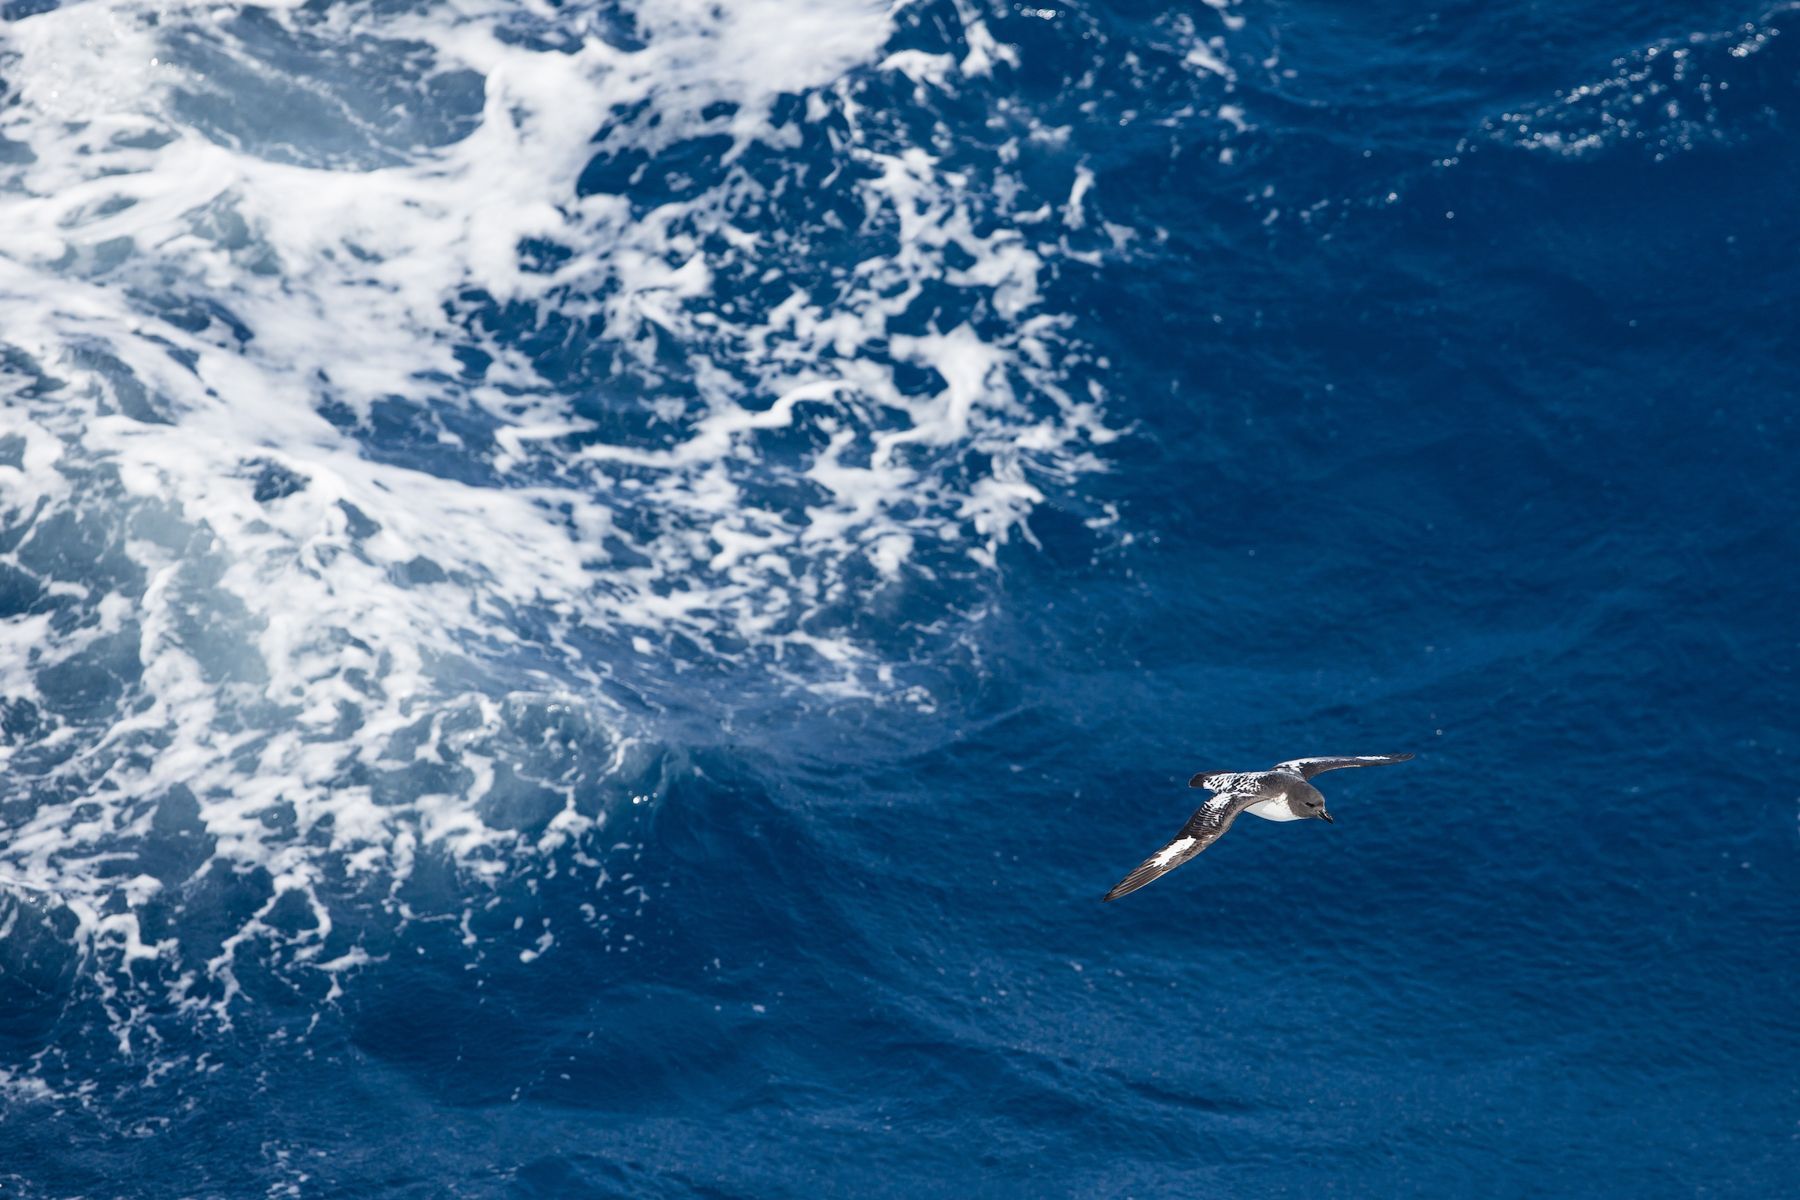 Cape Petrel in flight off Antarctica